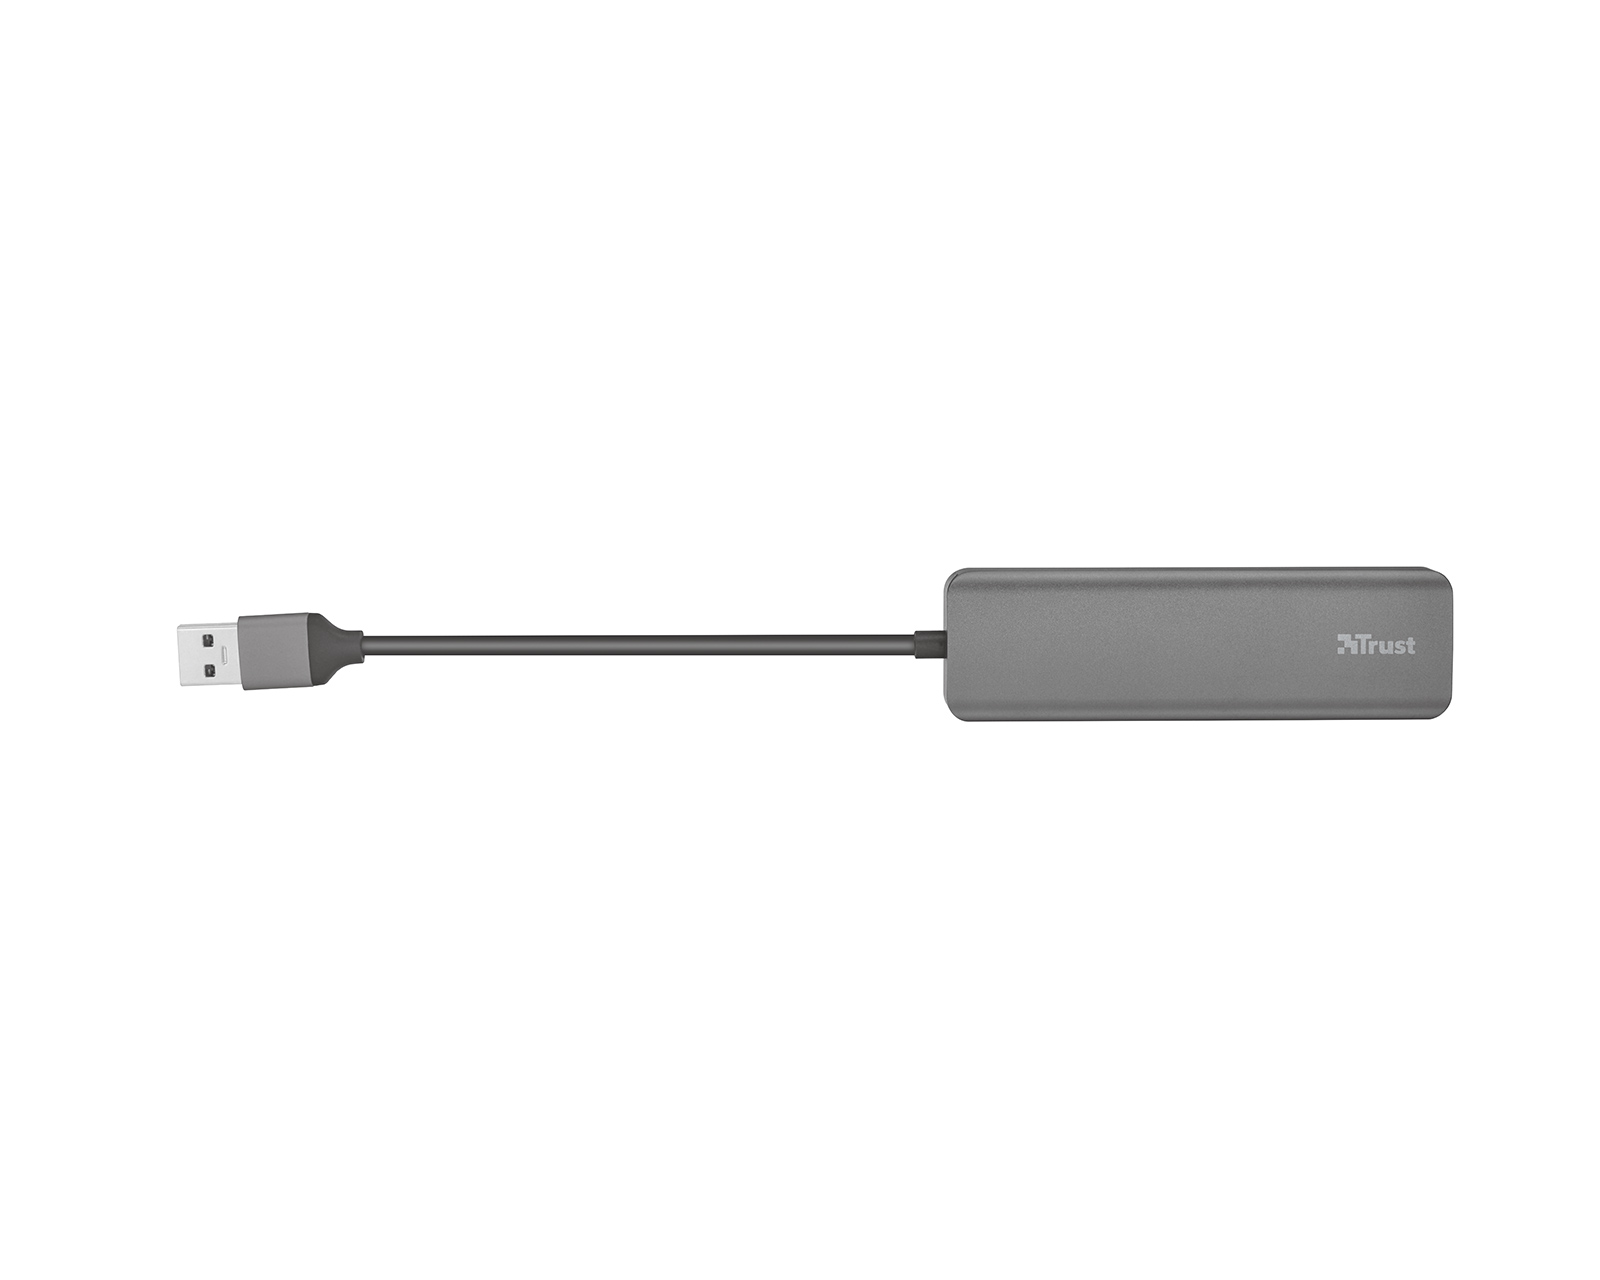 Halyx Aluminium 4-Port USB 3.2 Hub 